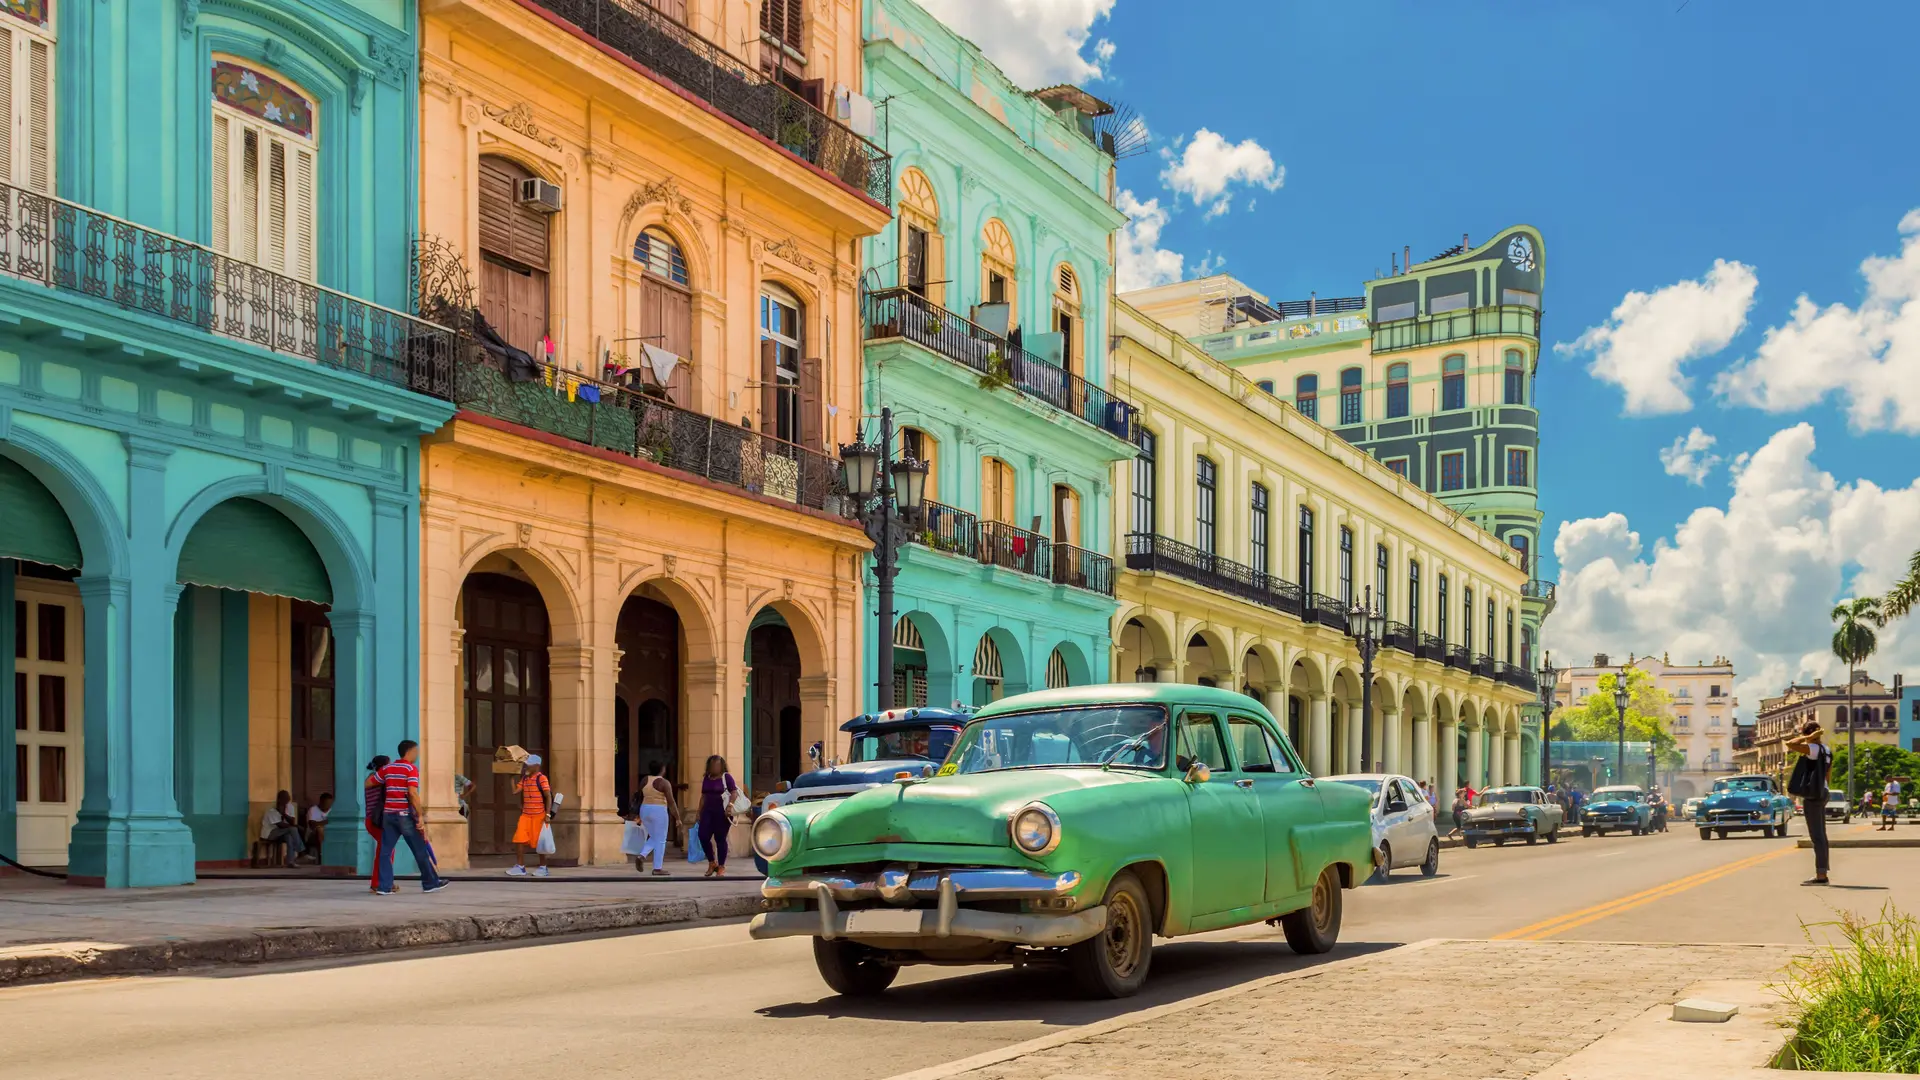 Straßenansicht einer kubanischen Stadt. Ein alter grüner Oldtimer steht auf der Straße.